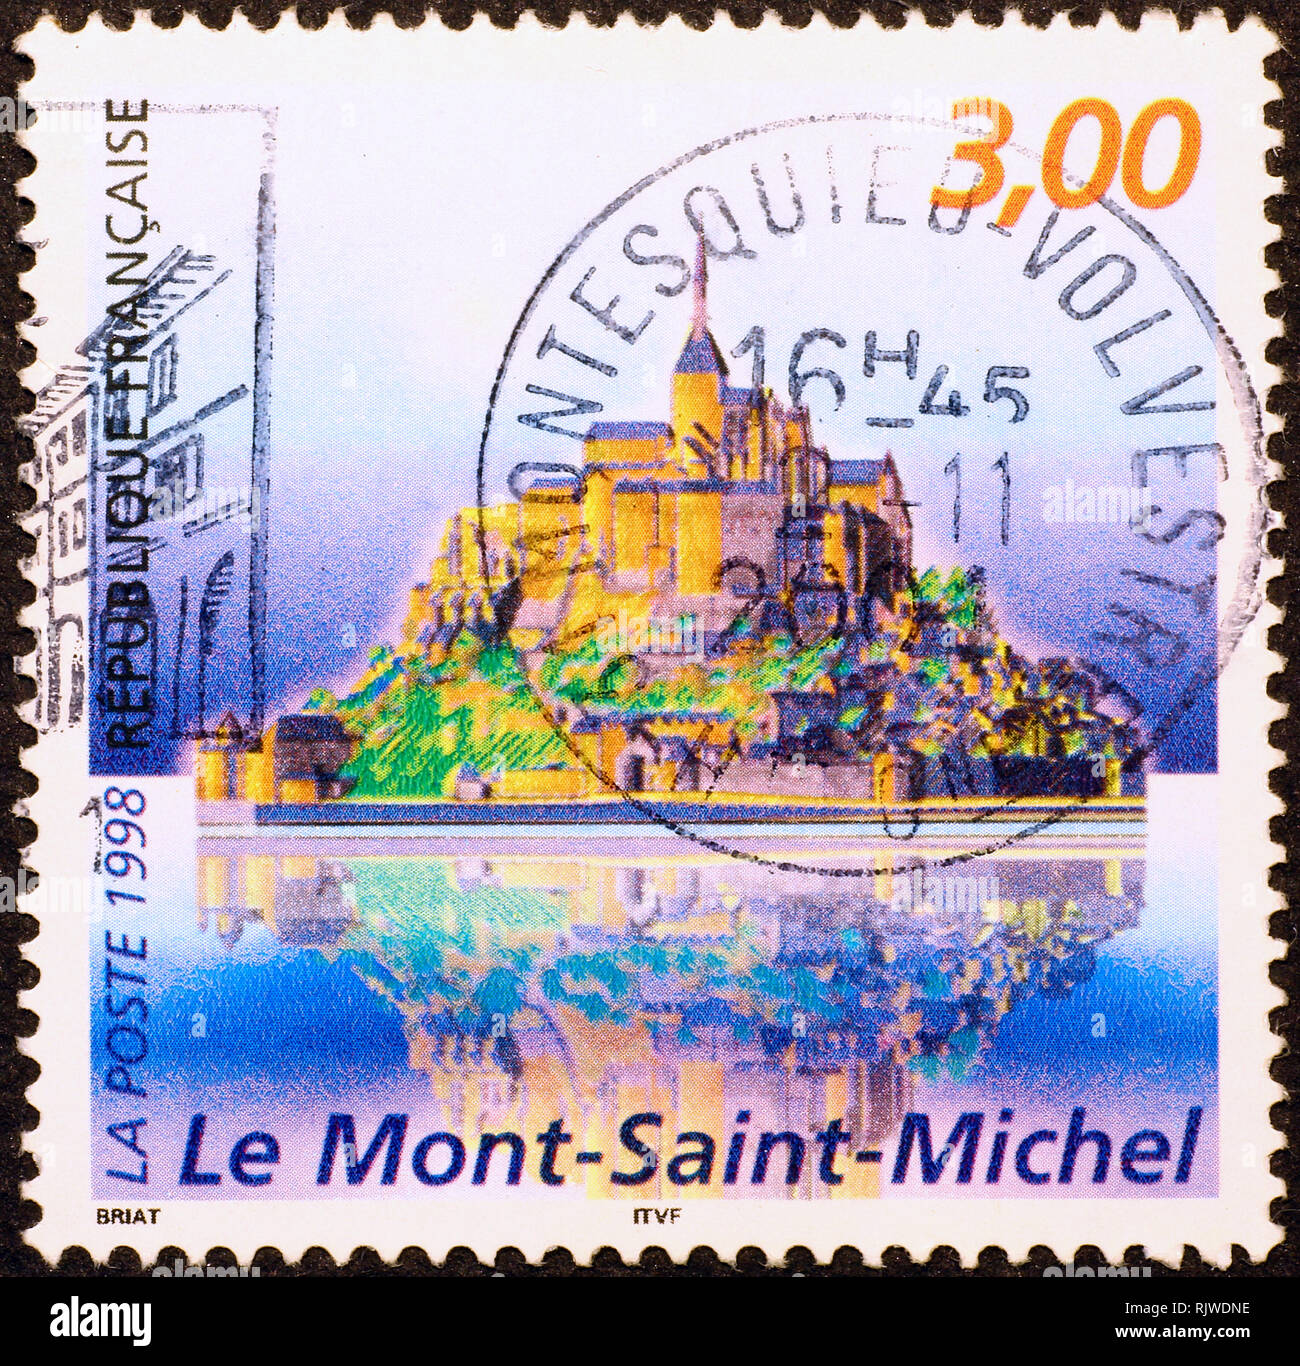 Timbre montrant le Mont-Saint-Michel, France Banque D'Images